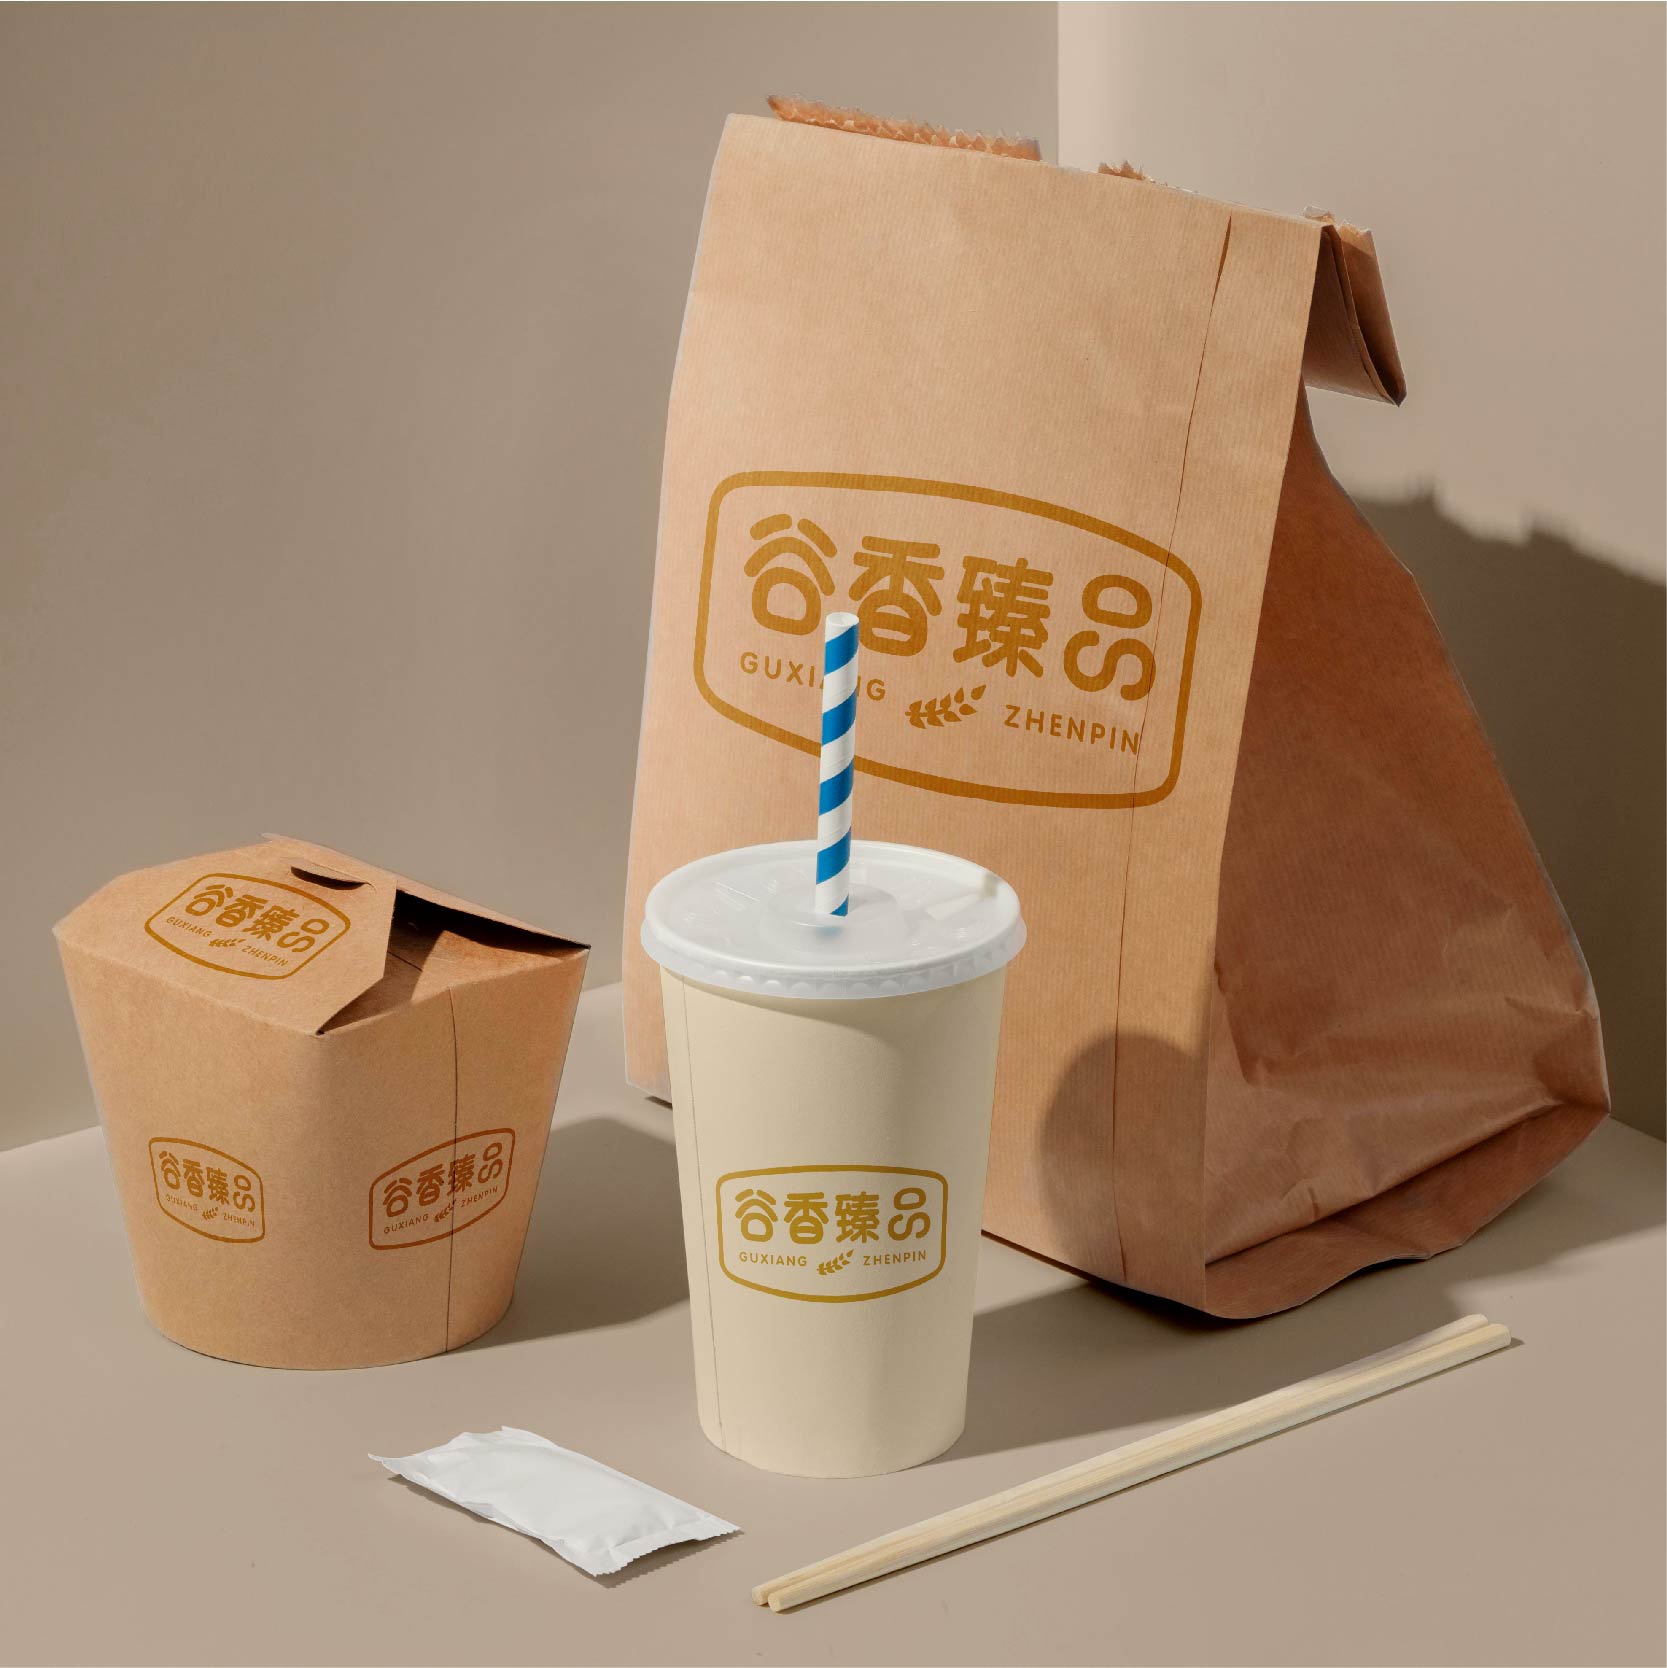 产品包装设计制作-品牌包装设计-产品包装设计与制作-礼盒包装